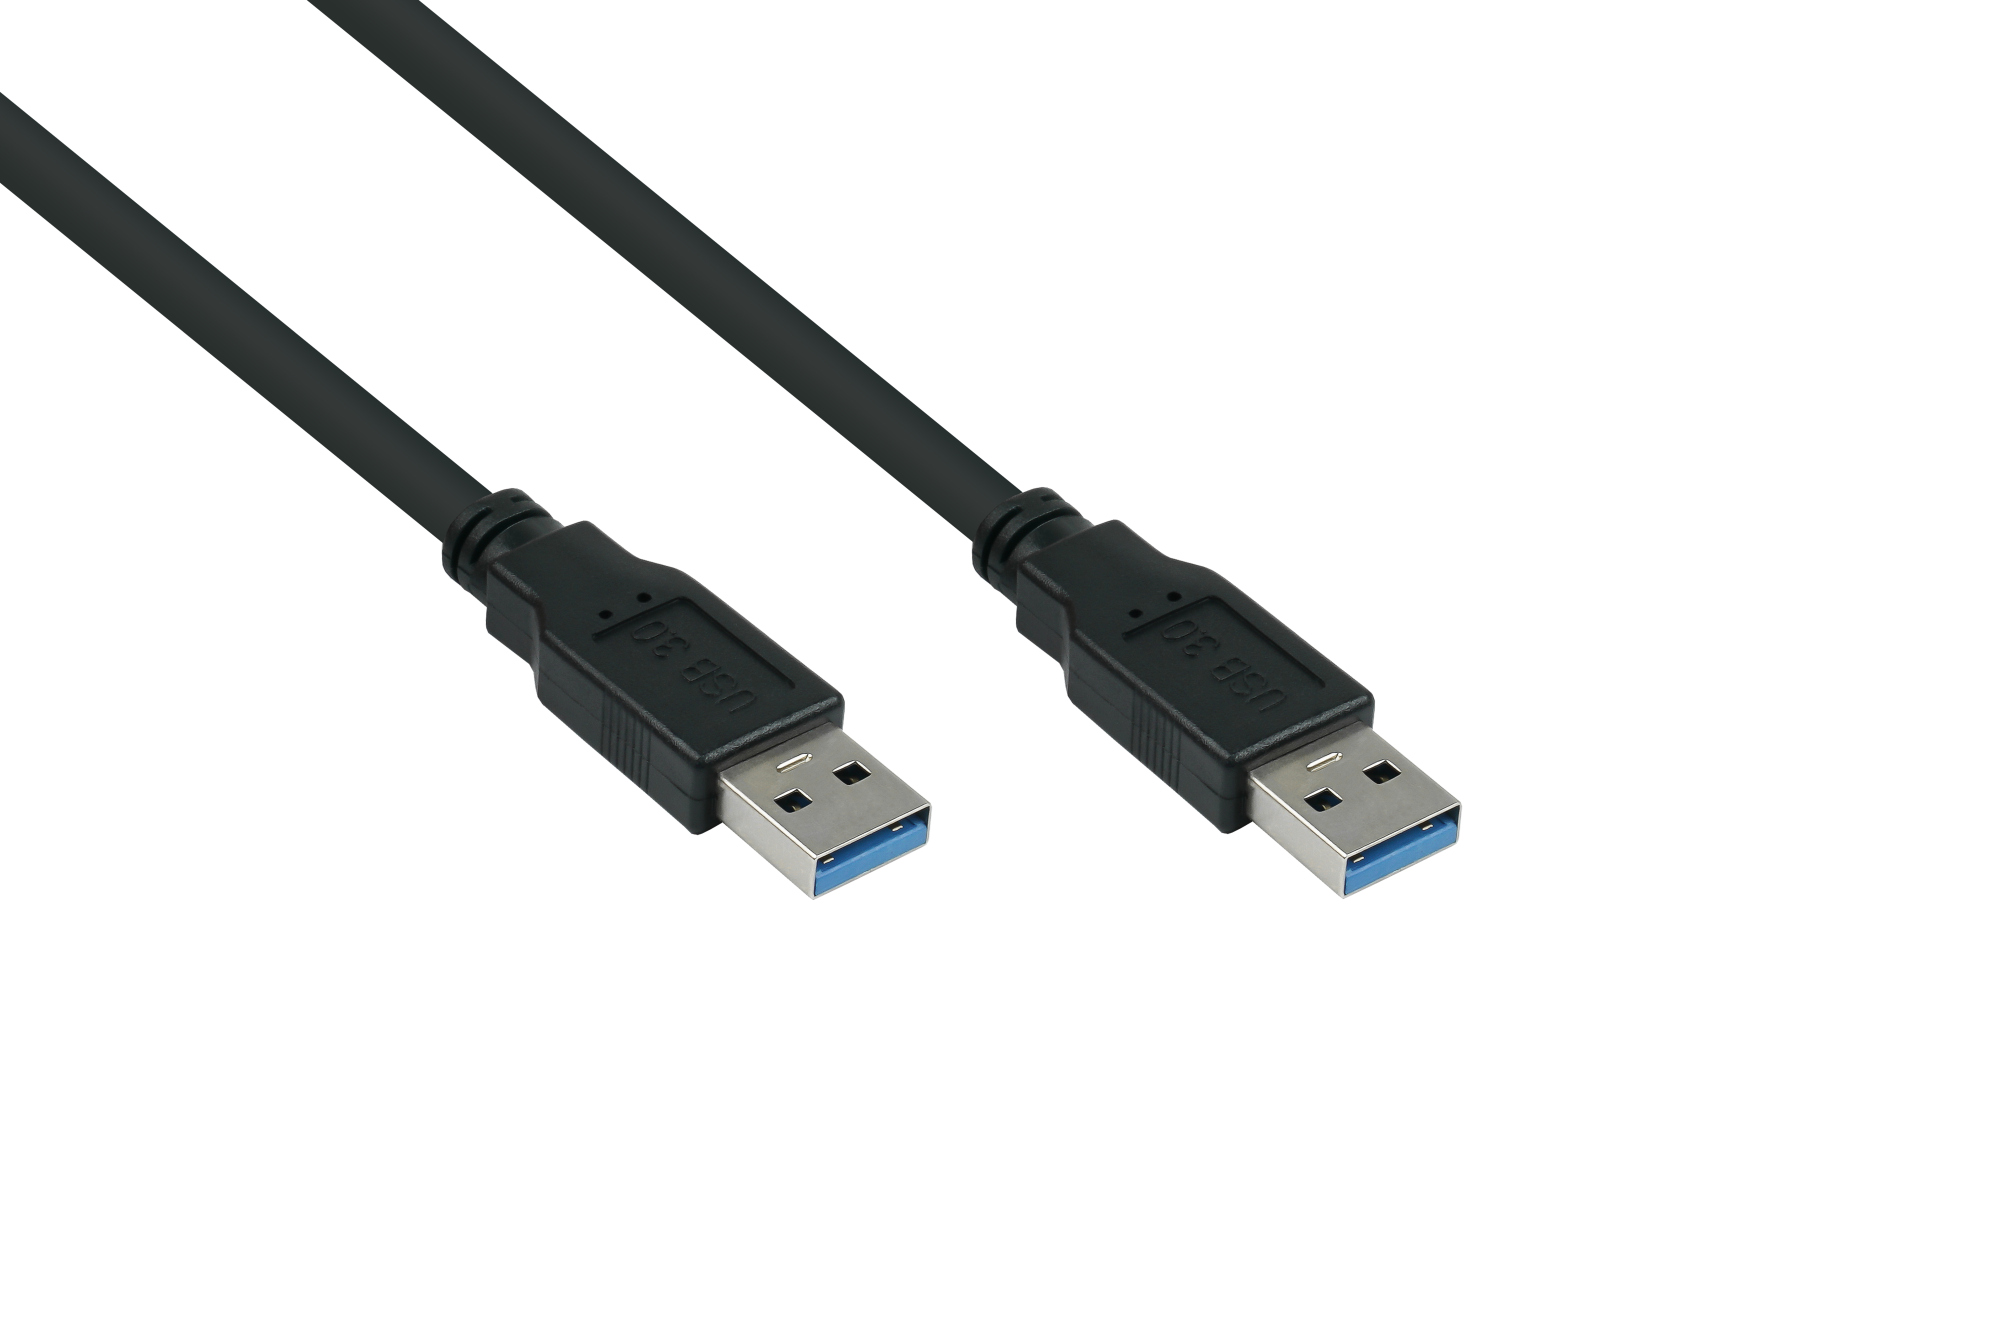 USB 3.0 Kabel Stecker A an Stecker A, Premium, AWG28 / AWG24, UL, KUPFER, schwarz, 5m